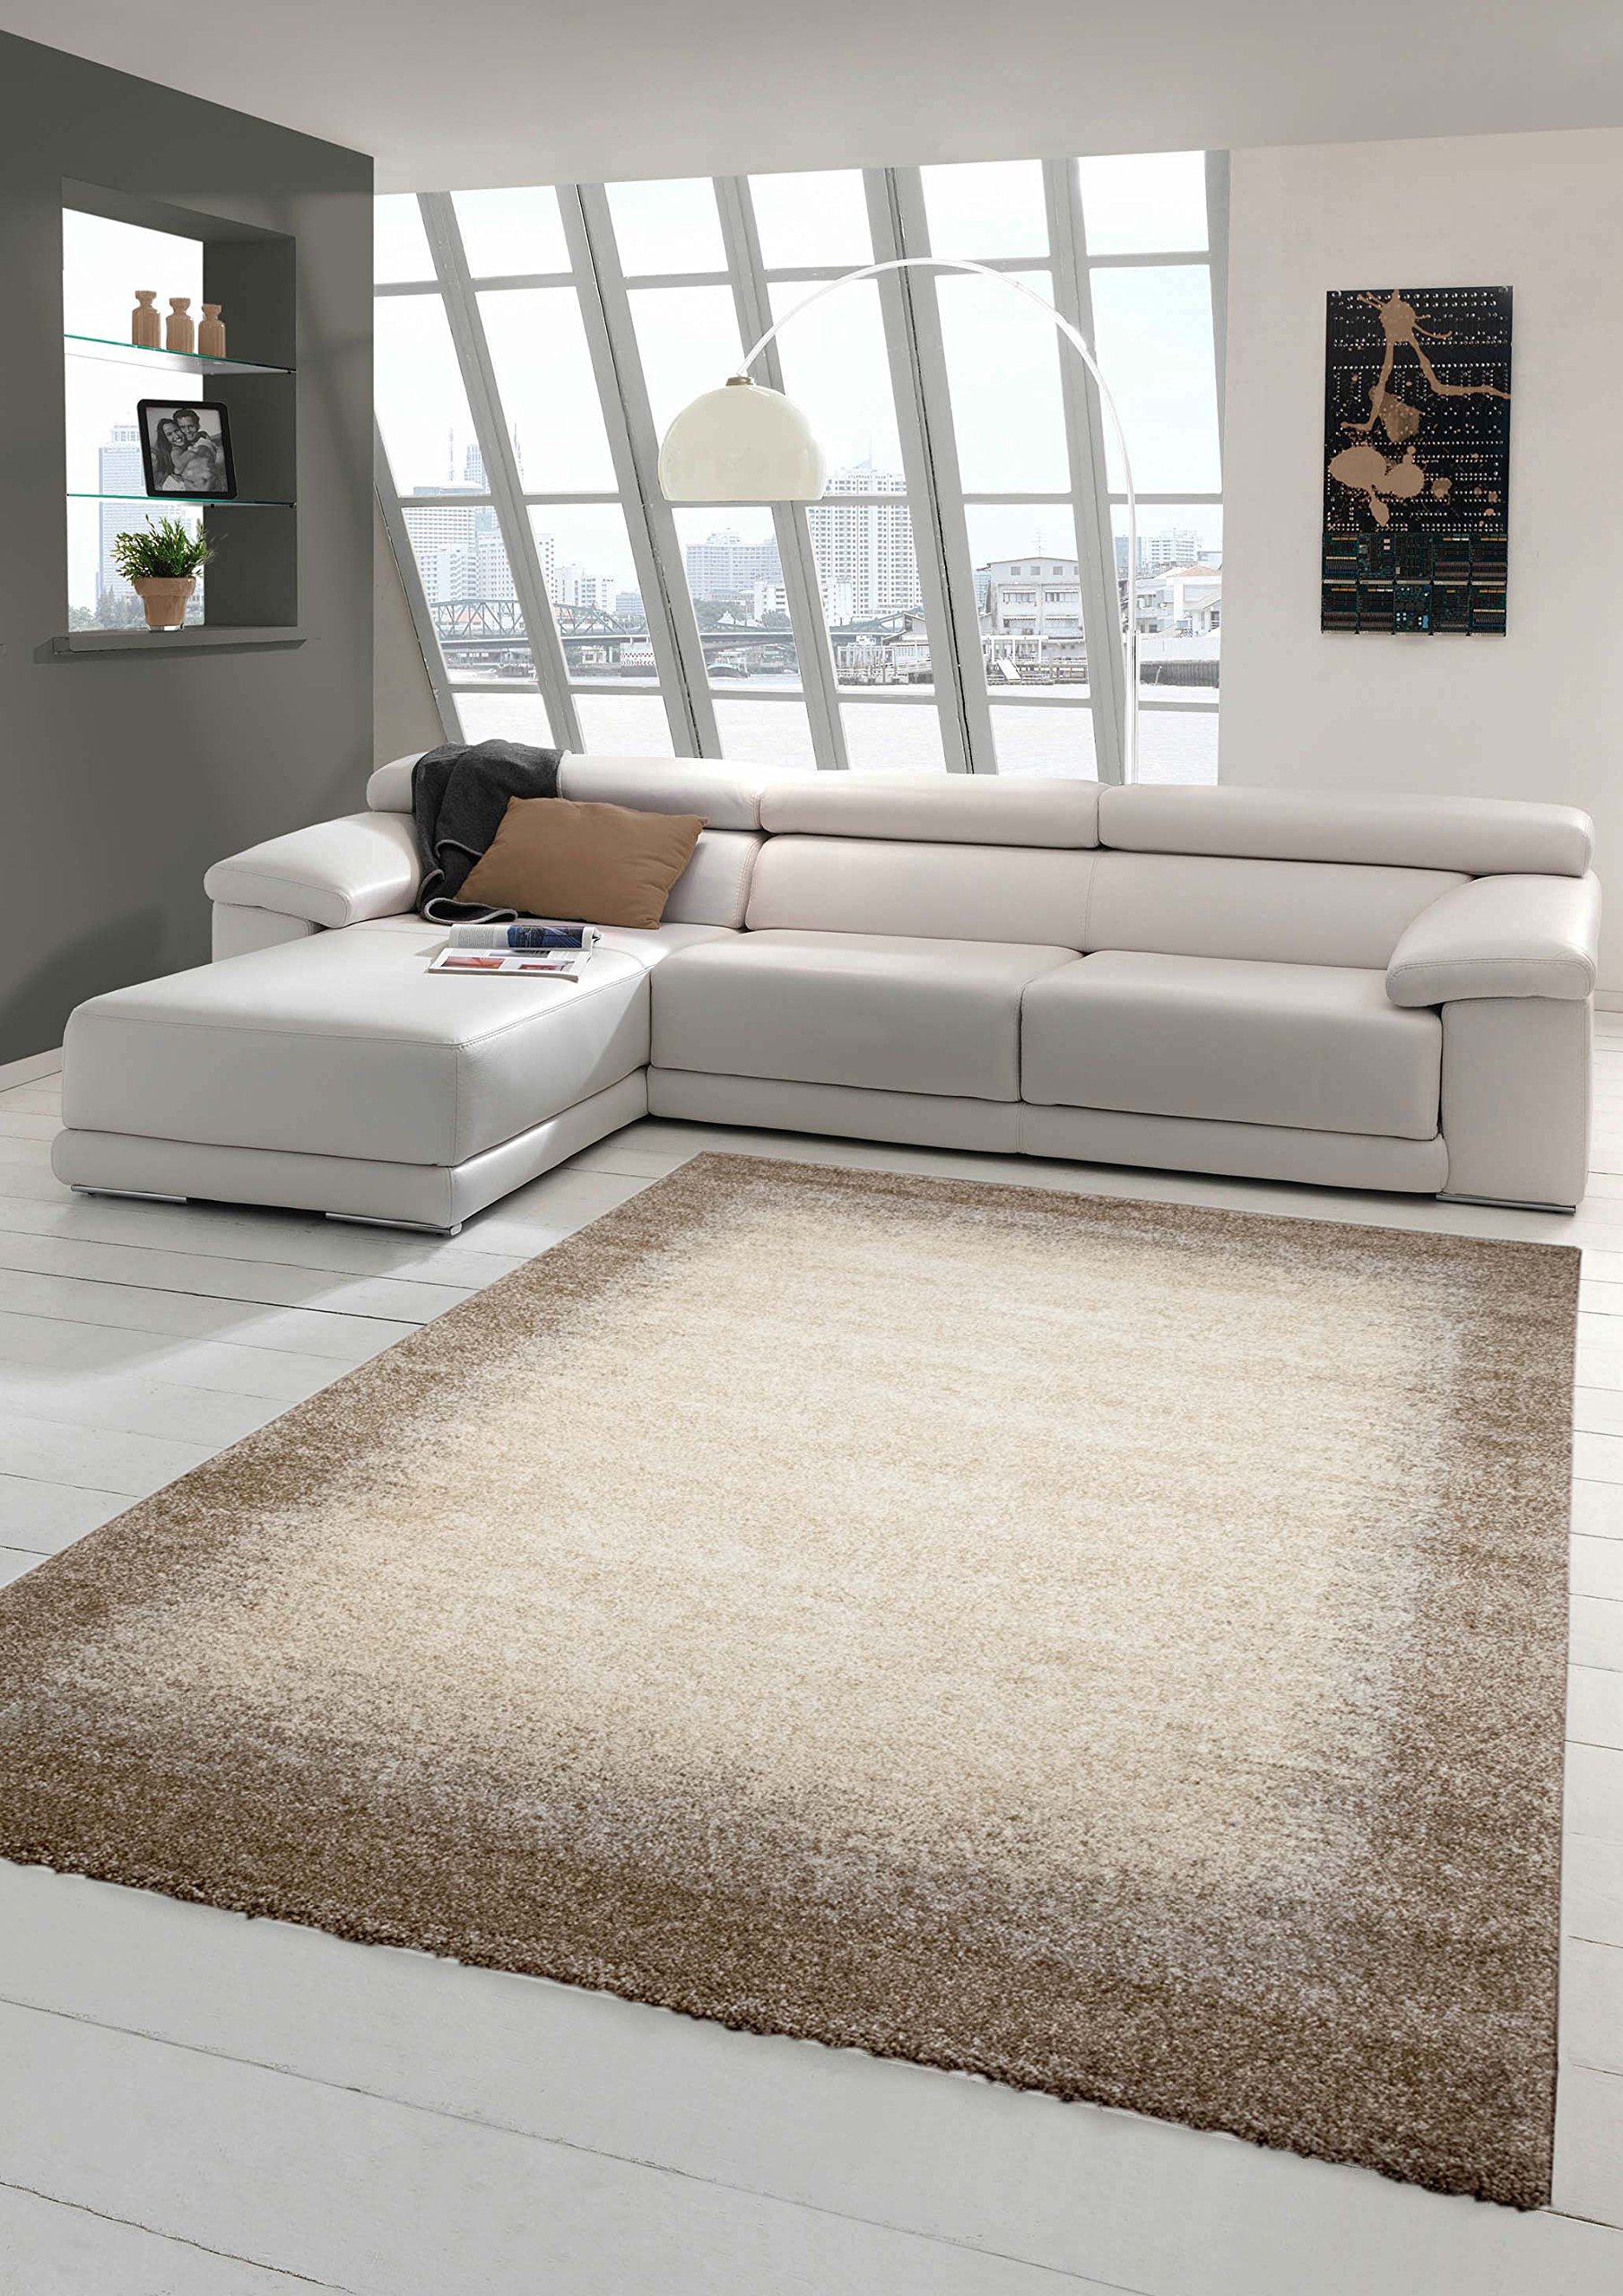 Designer Teppich Moderner Teppich Wohnzimmer Teppich Kurzflor Teppich Barock Design Meliert mit Bordüre in Braun Beige Creme Größe 80x150 cm